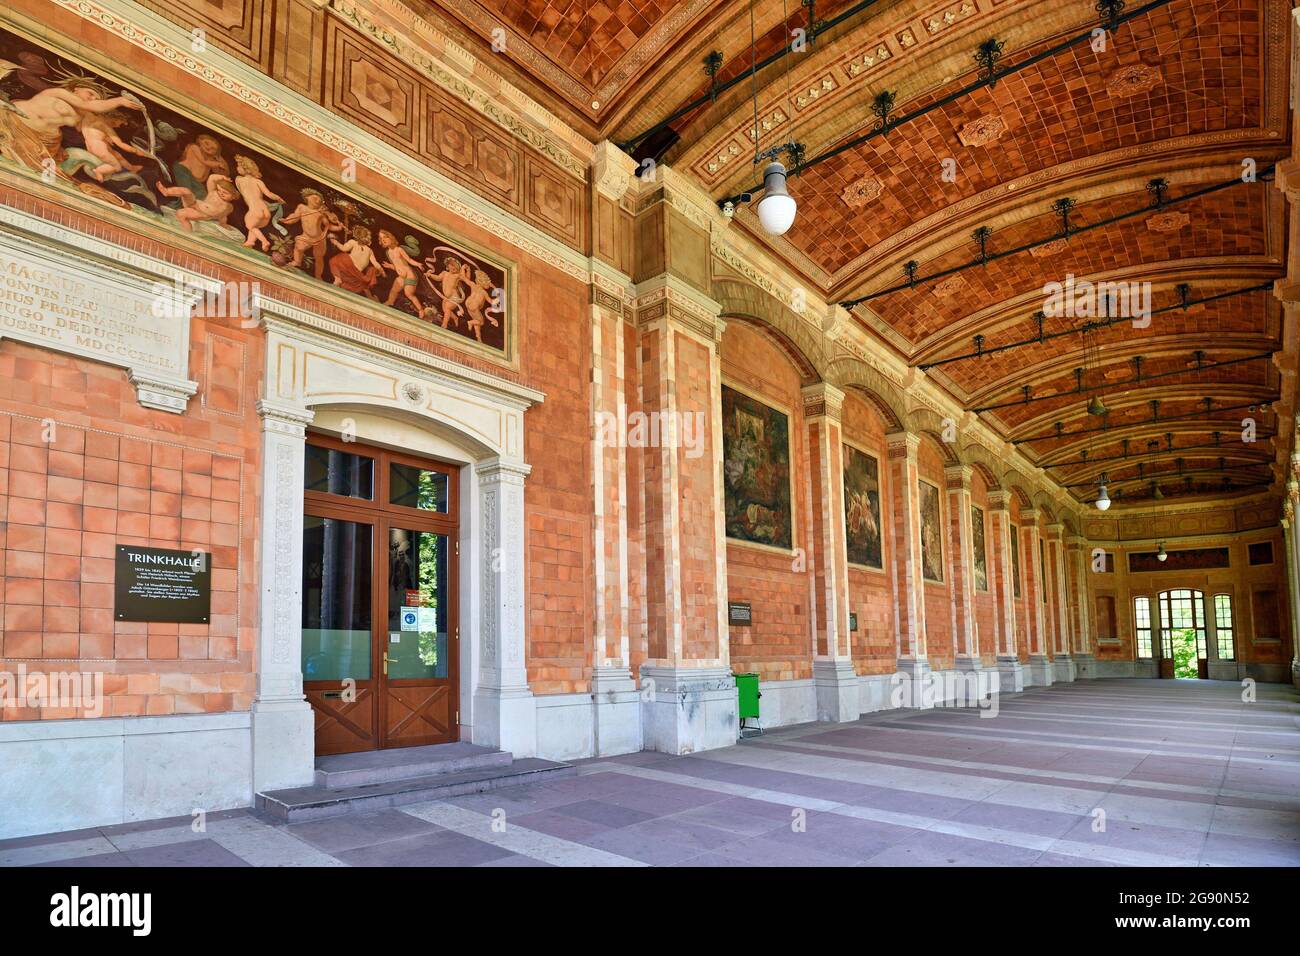 Baden-Baden, Allemagne - juillet 2021: Entrée de la pompe historique appelée 'Trinkhalle' bordée de fresques de l'artiste Jakob Götzenberger Banque D'Images